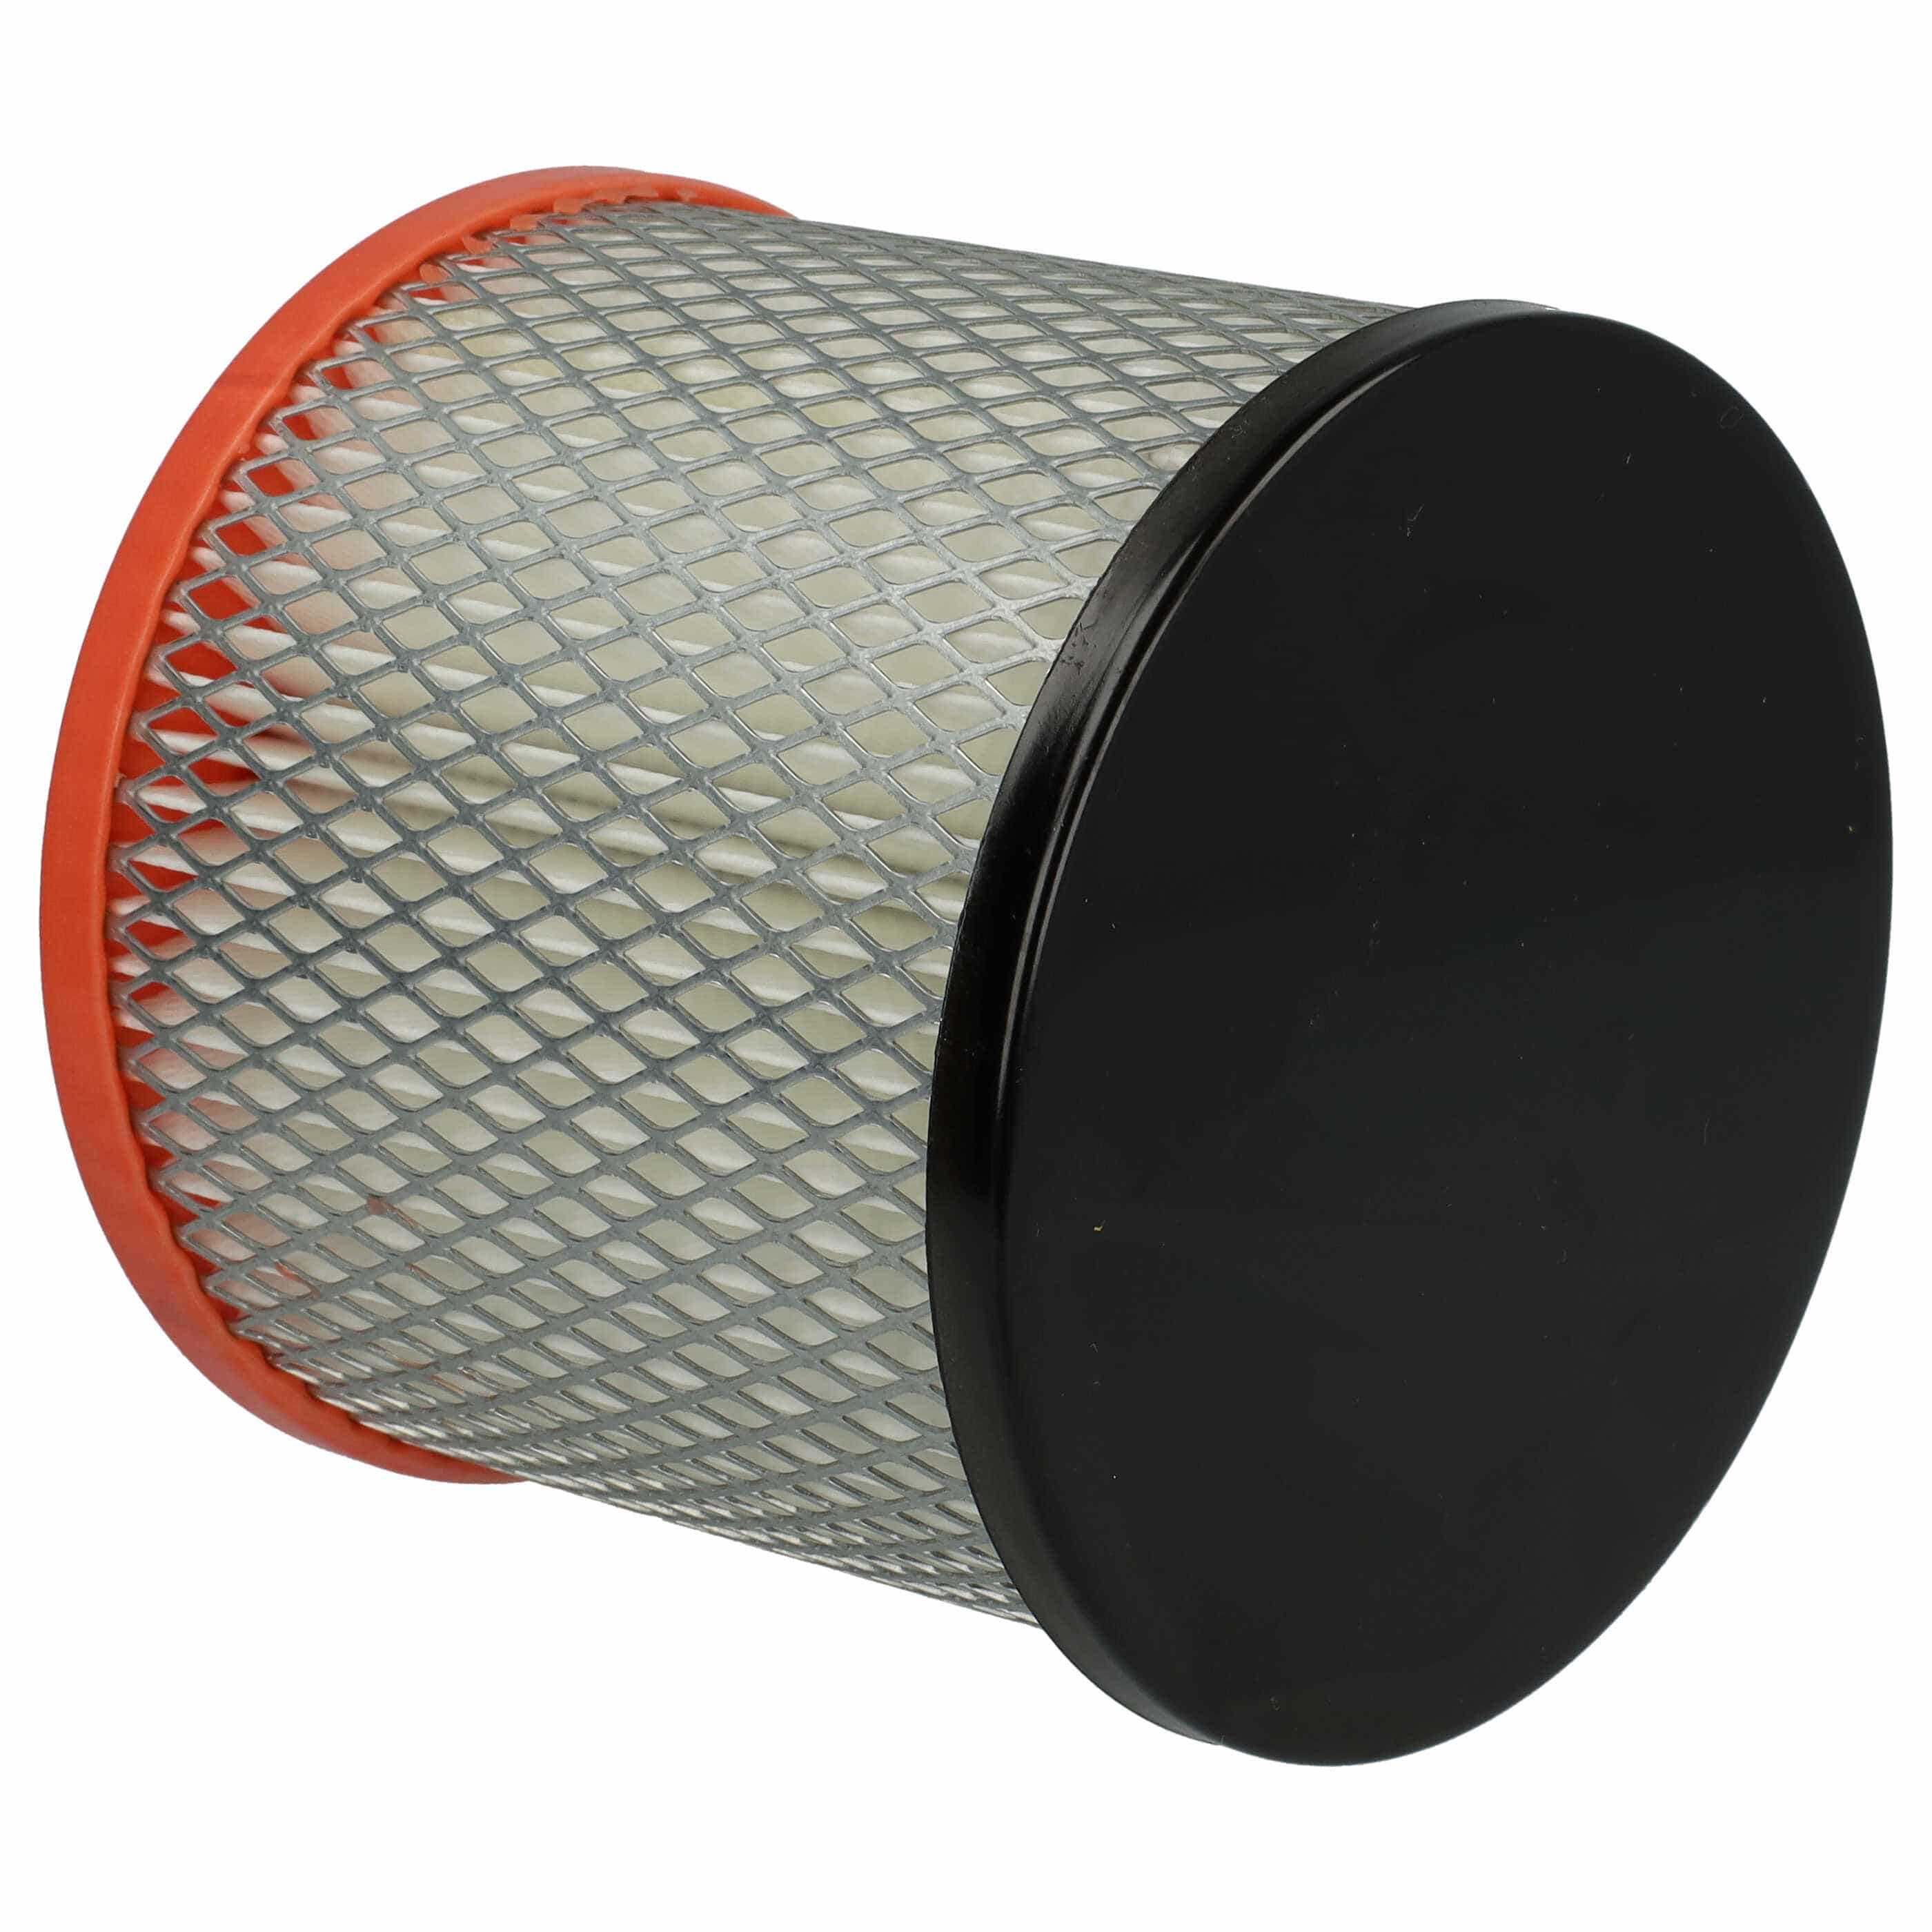 Filtro sostituisce Güde 16731 per aspiracenere - filtro cartucce, nero / arancione / bianco / grigio